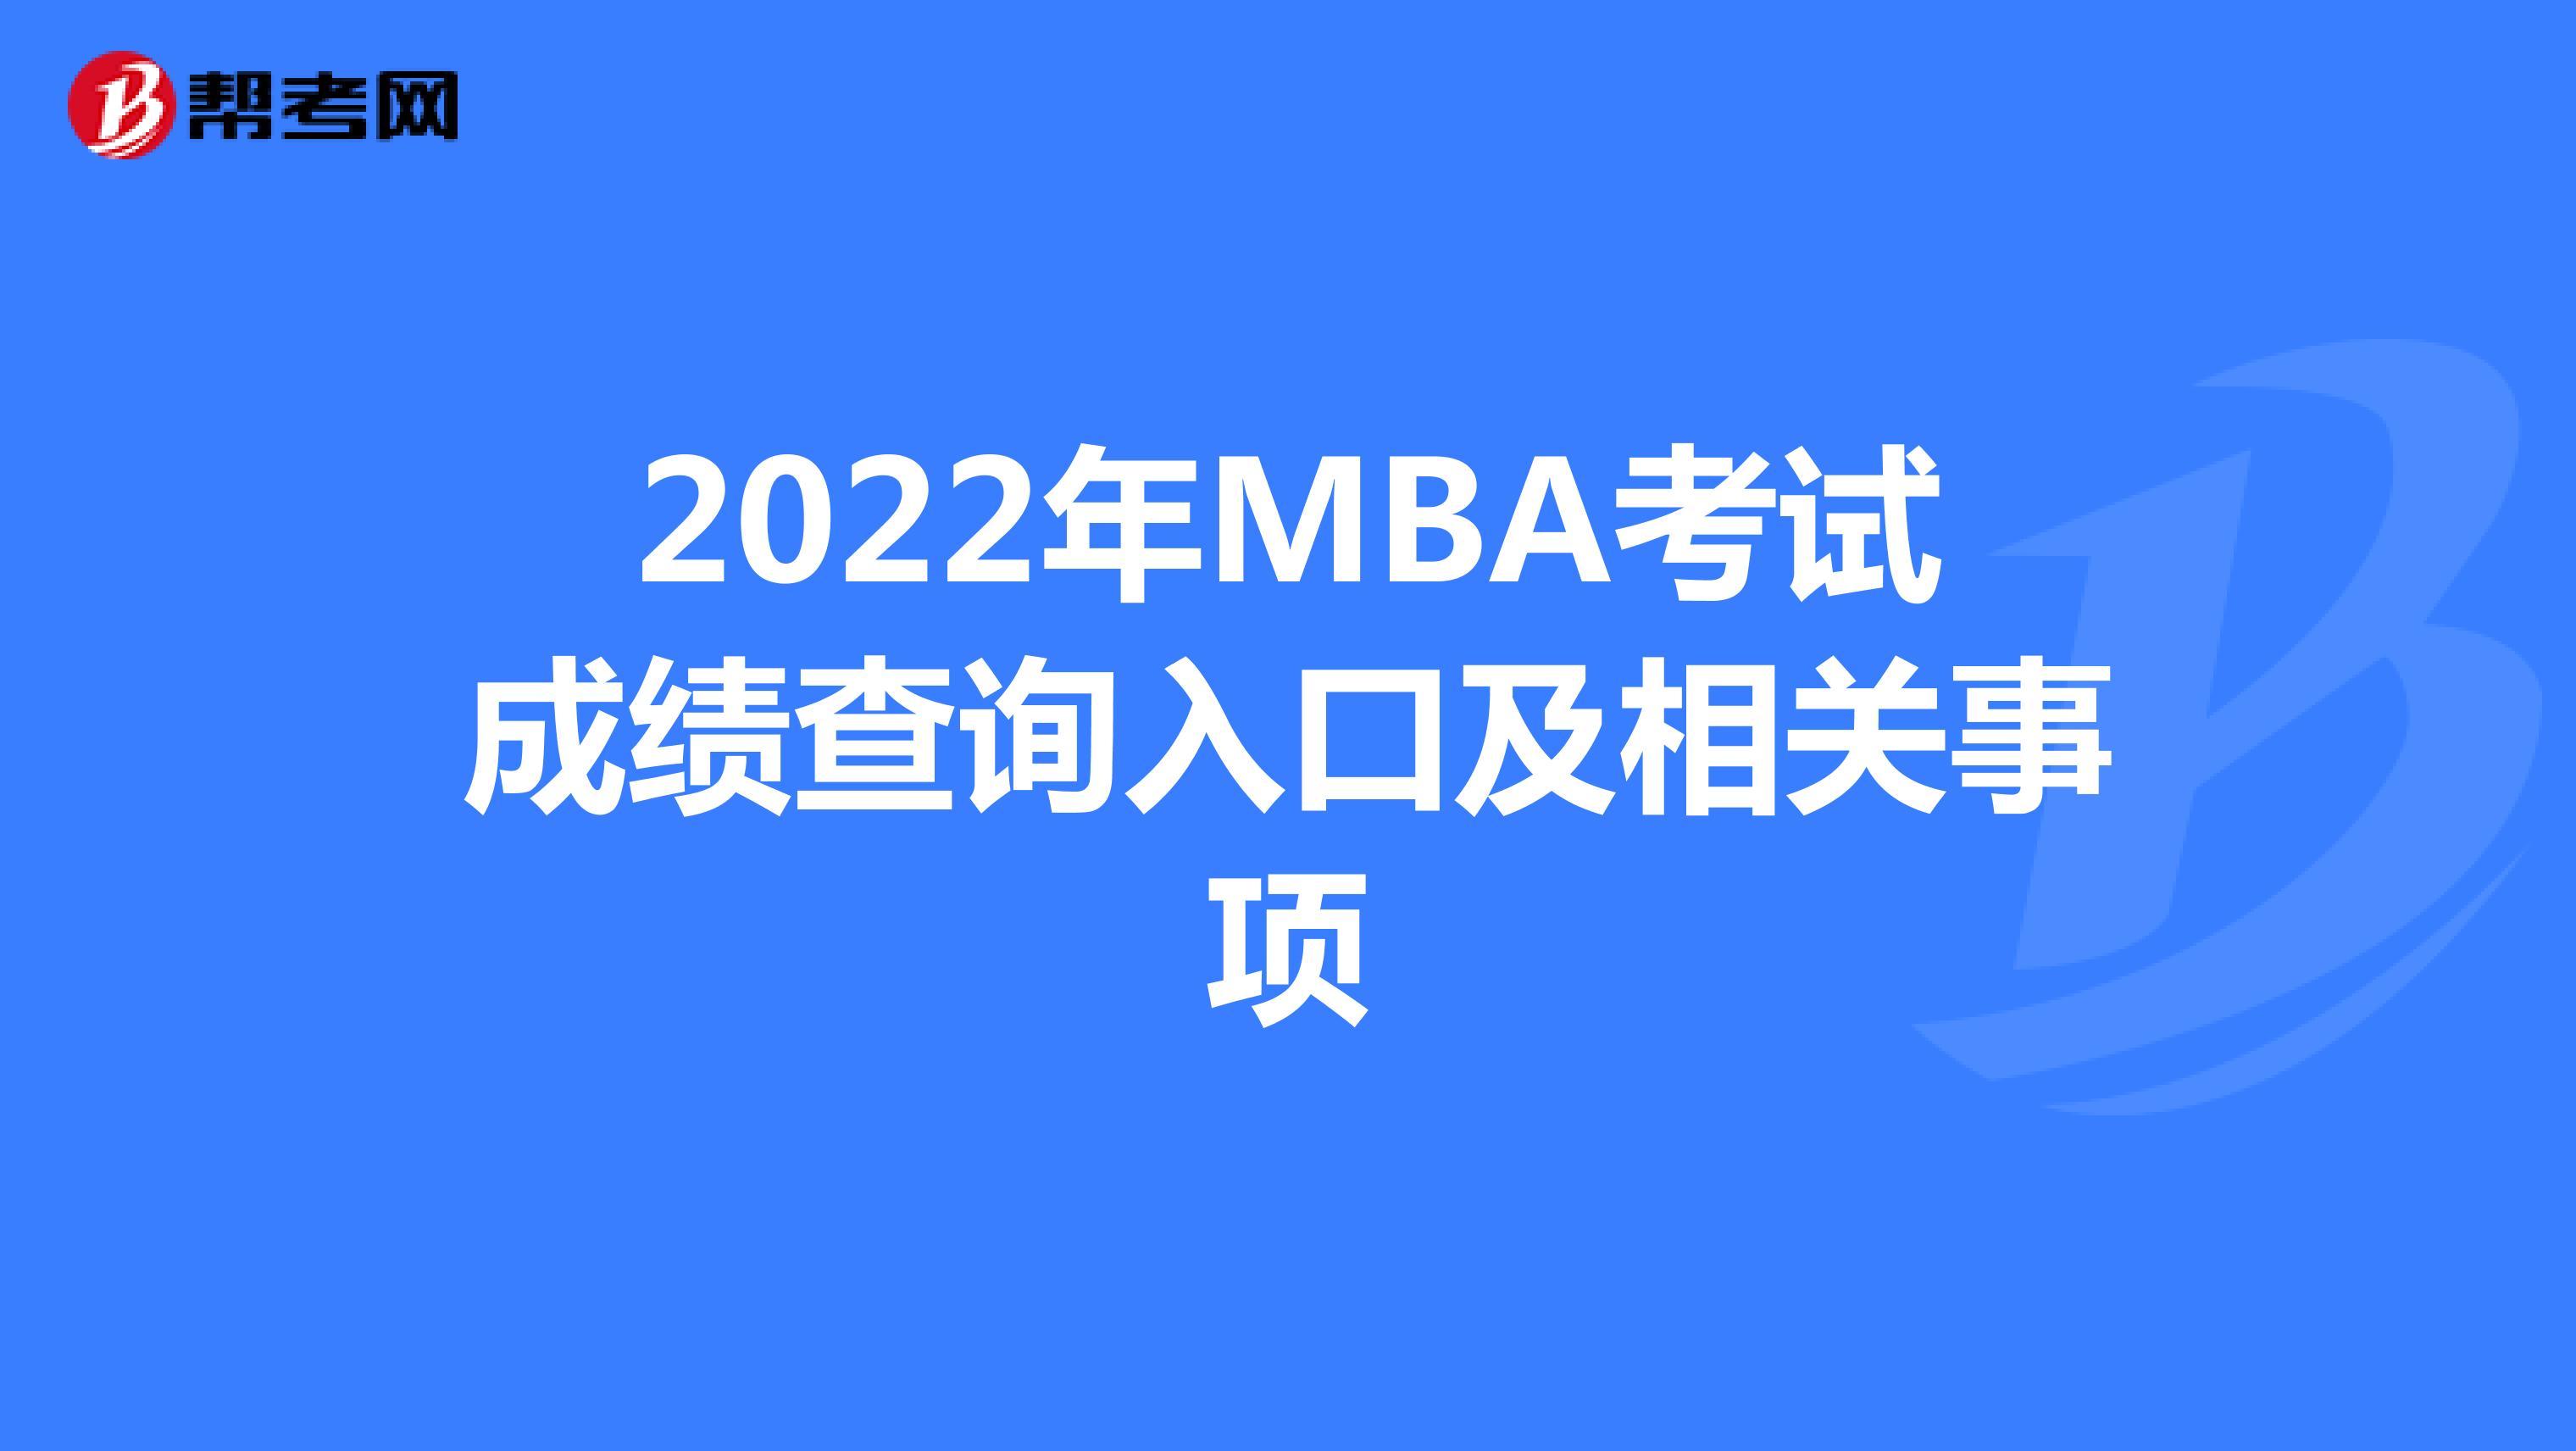 2022年MBA考试成绩查询入口及相关事项